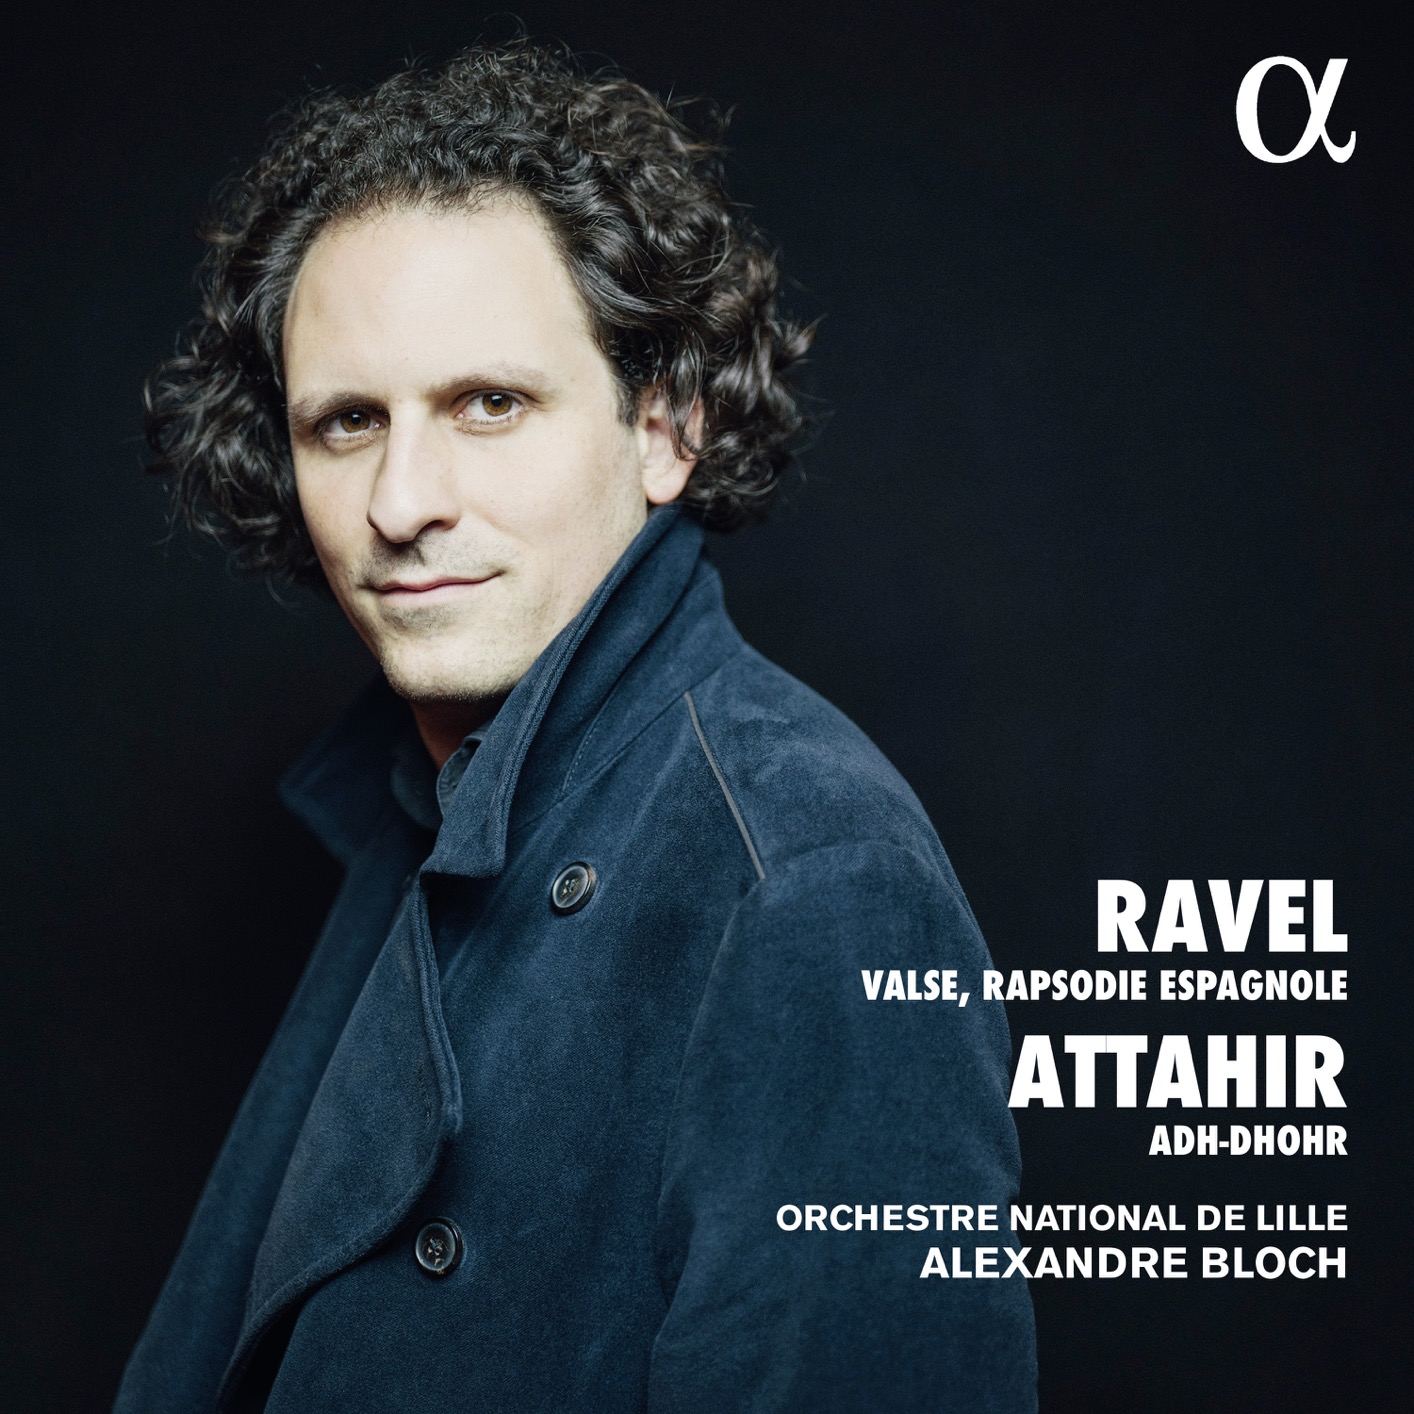 Orchestre National de Lille & Alexandre Bloch – Ravel & Attahir: Valse, Rapsodie espagnole & Adh-Dhor (2019) [FLAC 24bit/96kHz]